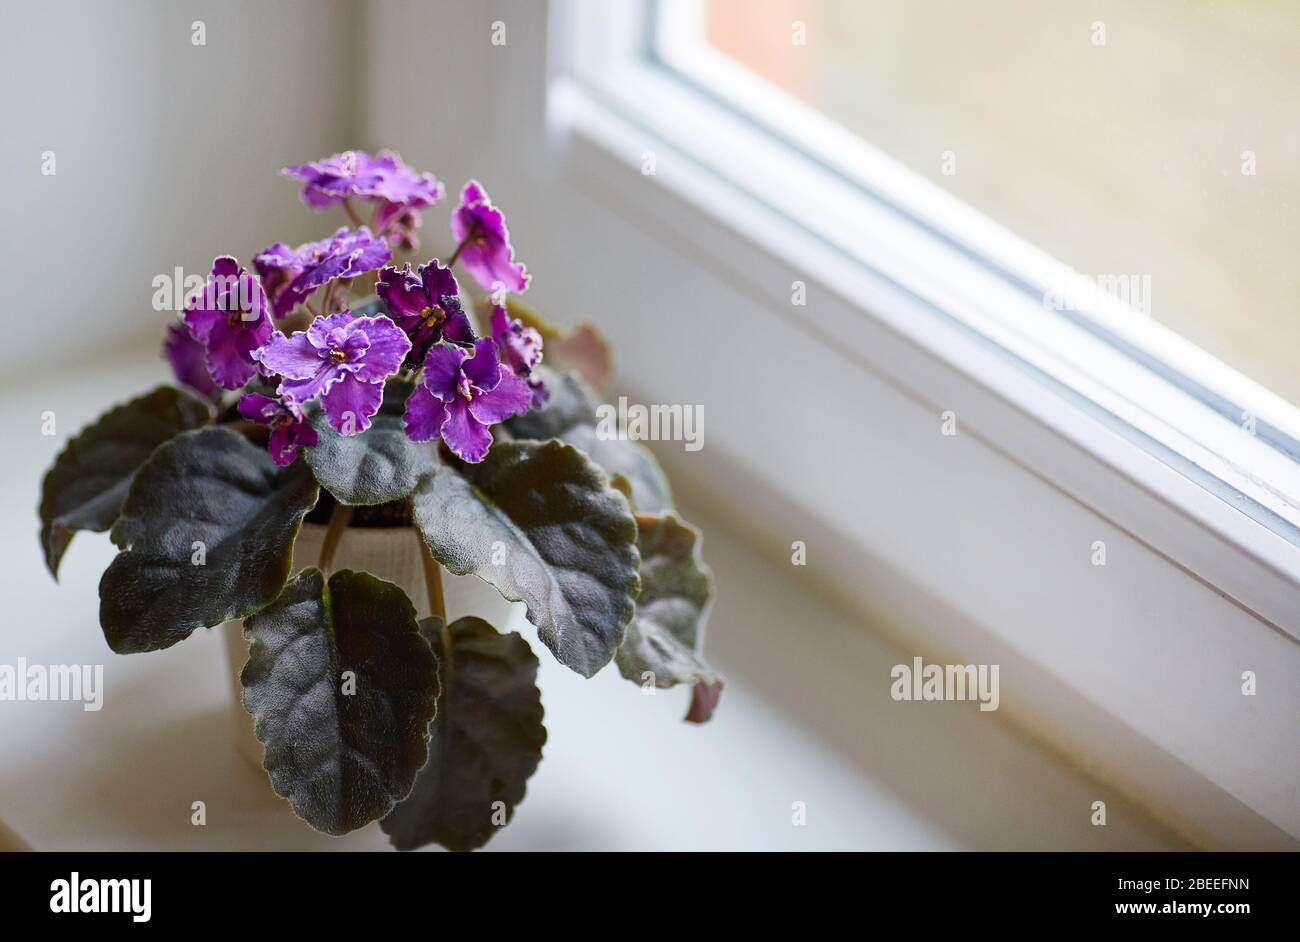 Fiori di zambar saintpaulia viola in una pentola sulla finestra. Fiore viola. Profondità di campo bassa. Spazio di copia. Foto Stock